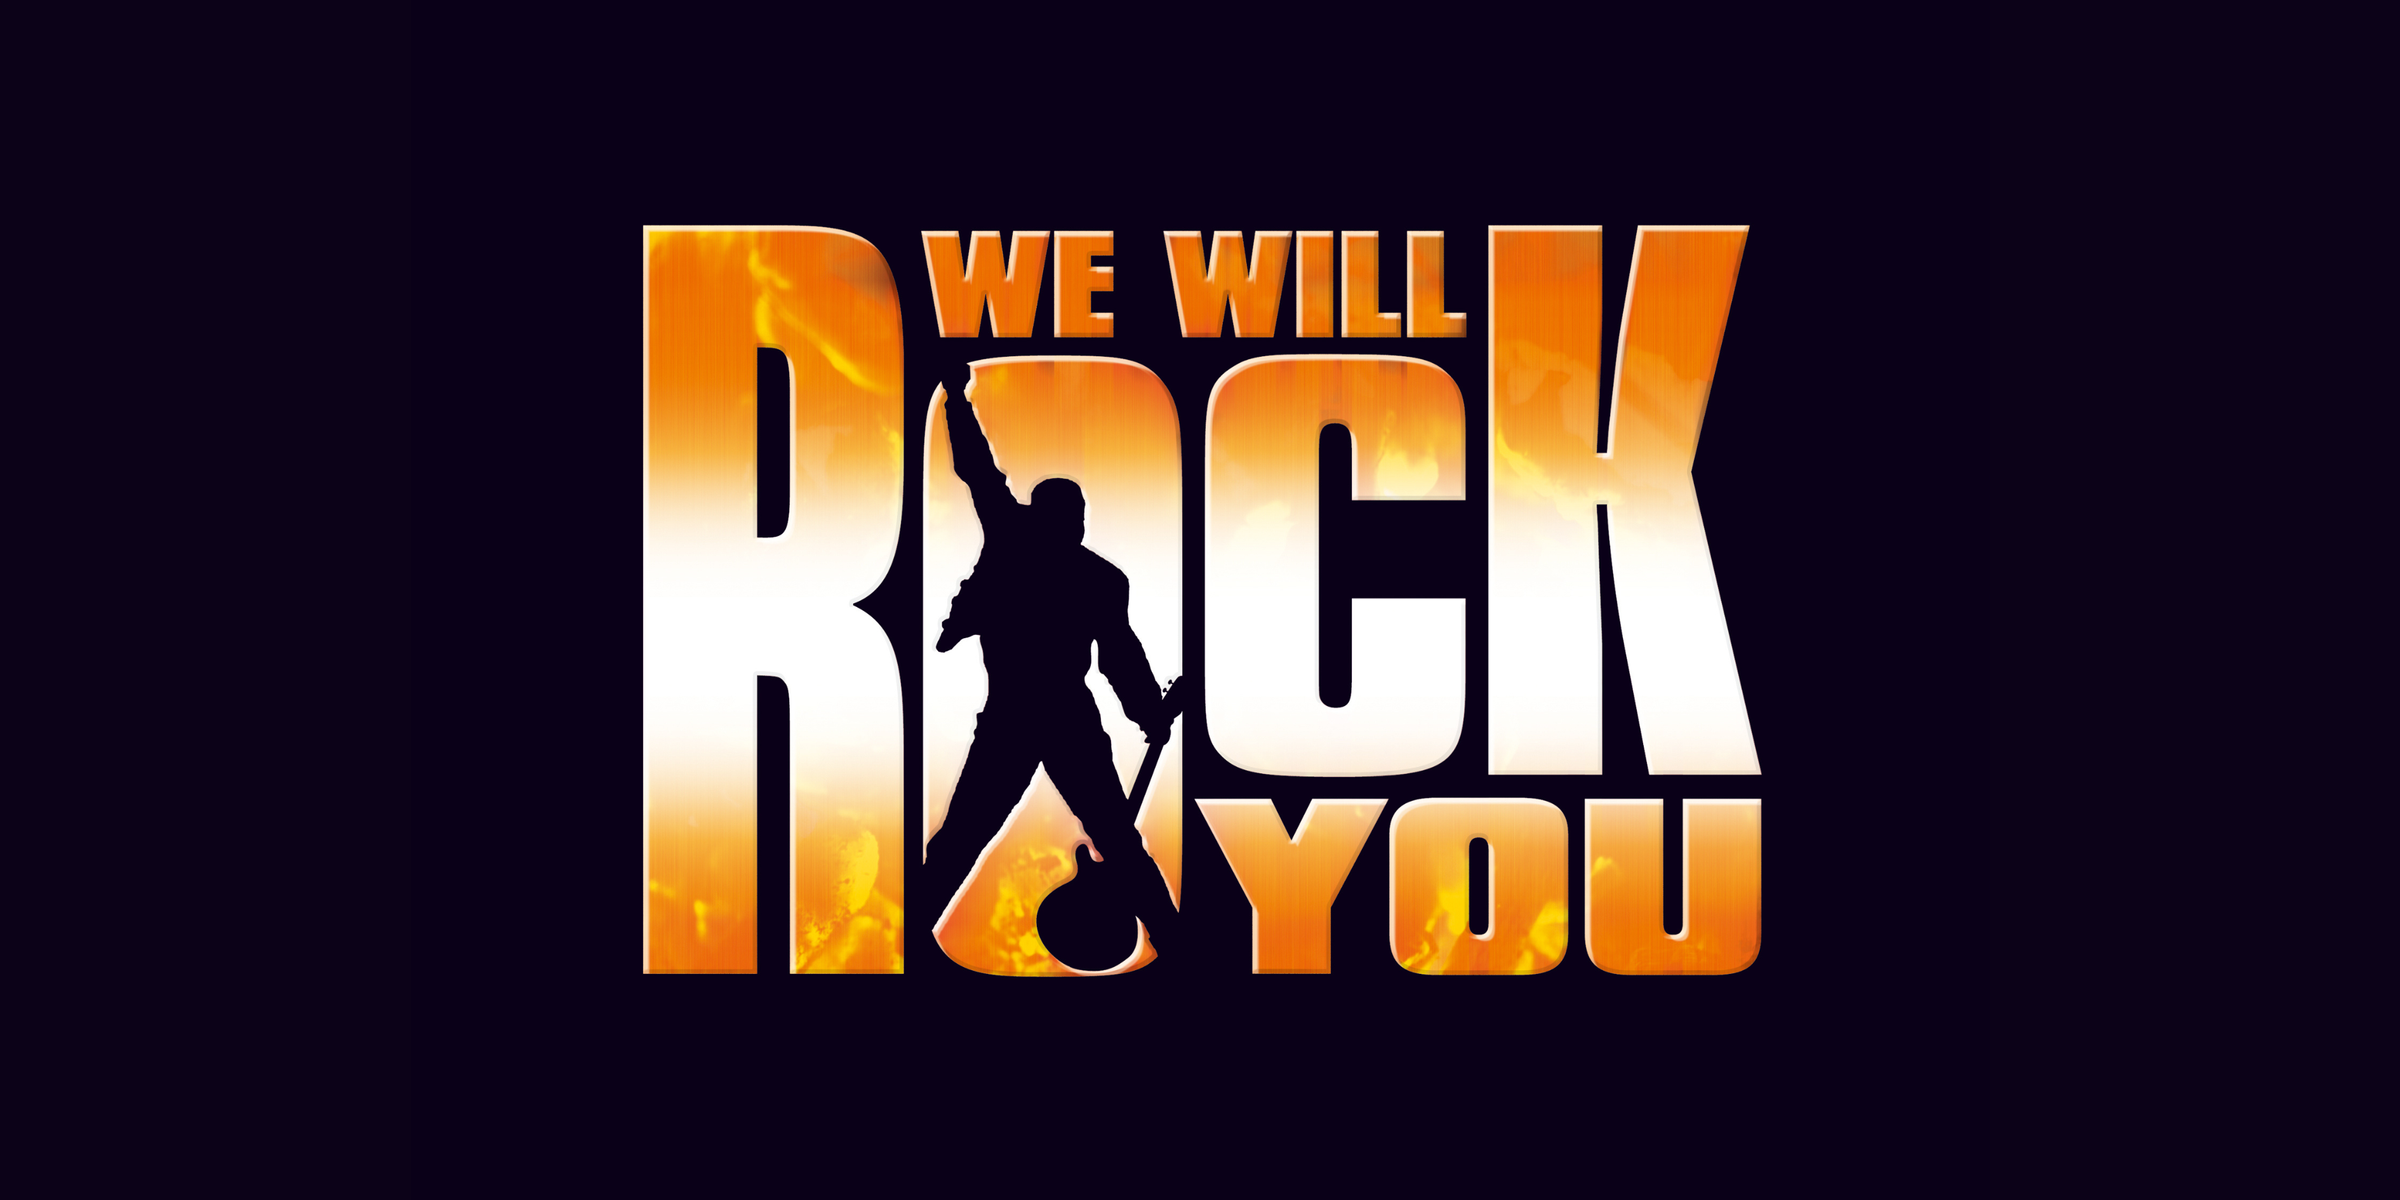 Слушать рок ю. We will Rock. We will Rock you. We will Rock you обложка. Группа Квин ви вил рок ю.